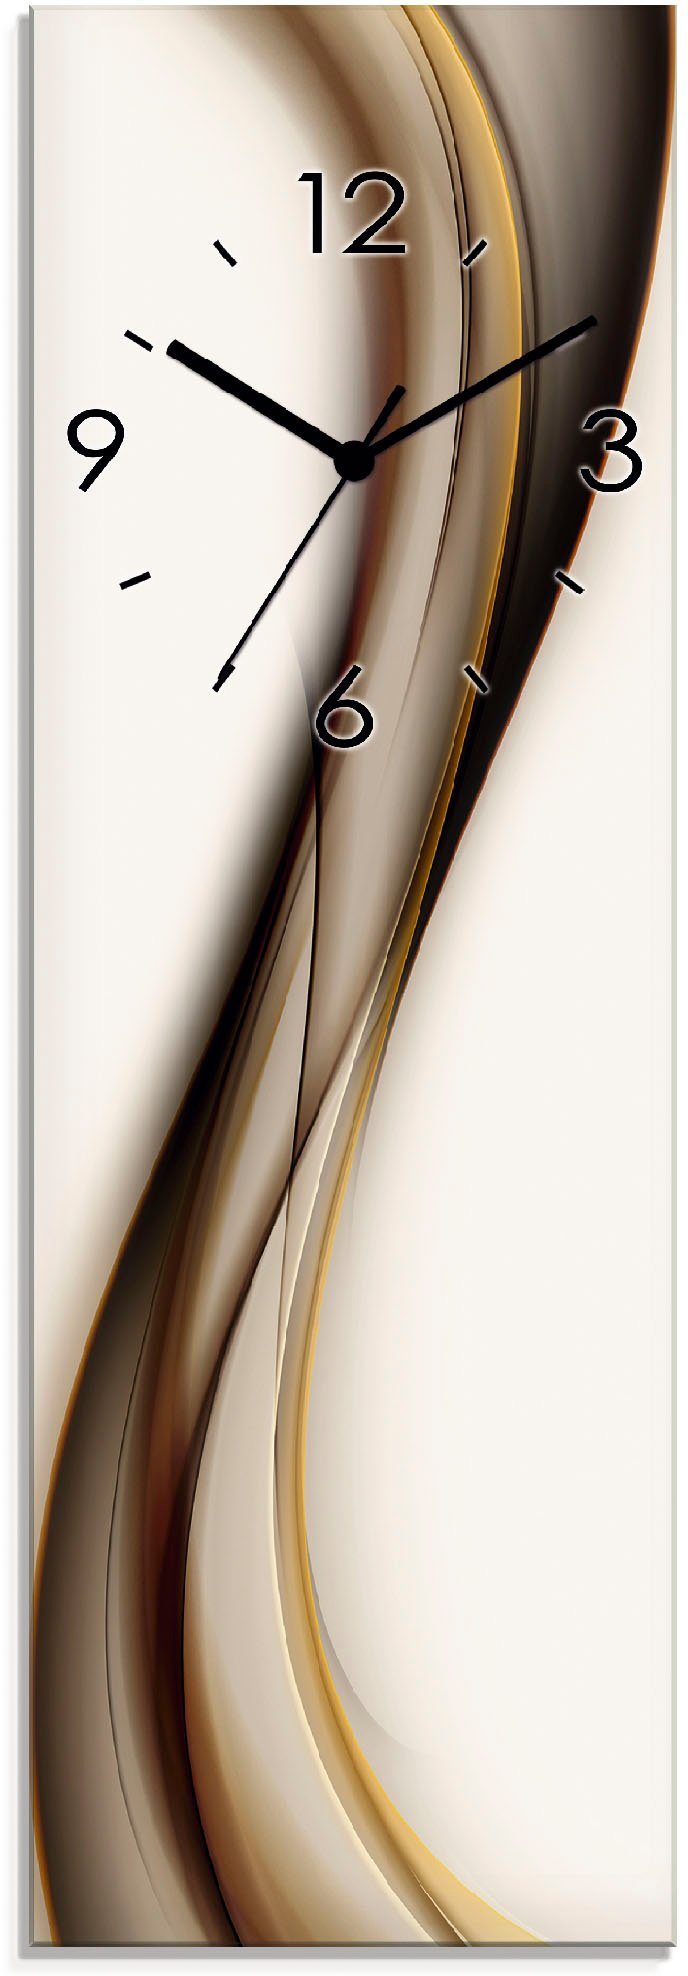 Artland Wanduhr Welle (wahlweise mit Quarz- oder Funkuhrwerk, lautlos ohne  Tickgeräusche), Moderne Wanduhr mit gut ablesbarem Zifferblatt, 20x60 cm | Wanduhren